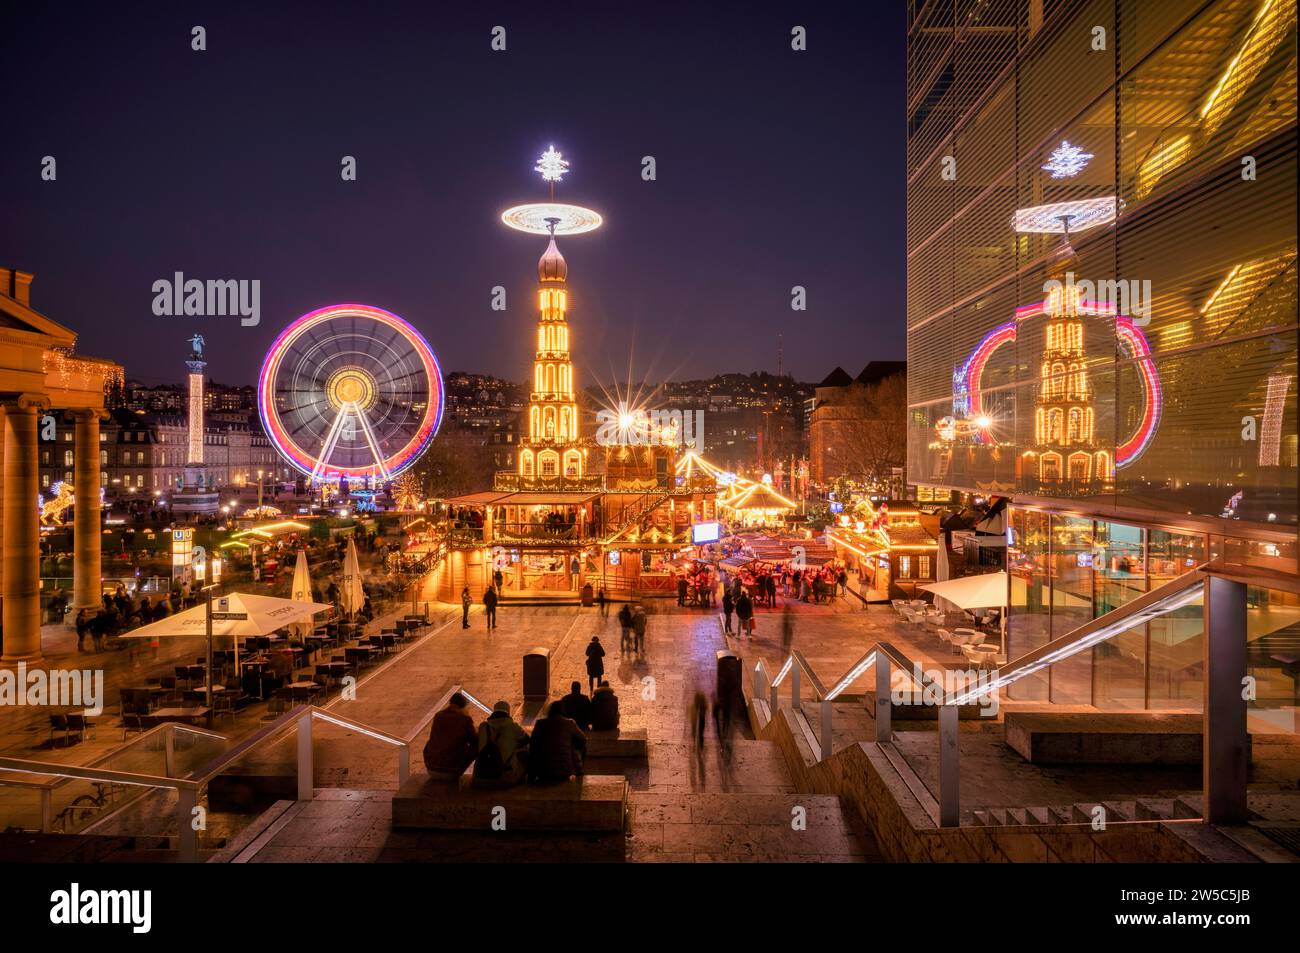 Shot de nuit, marché de Noël avec pyramide de Noël, reflet dans le musée d'art, Cube, grande roue, Nouveau Palais, Schlossplatz, heure bleue Banque D'Images